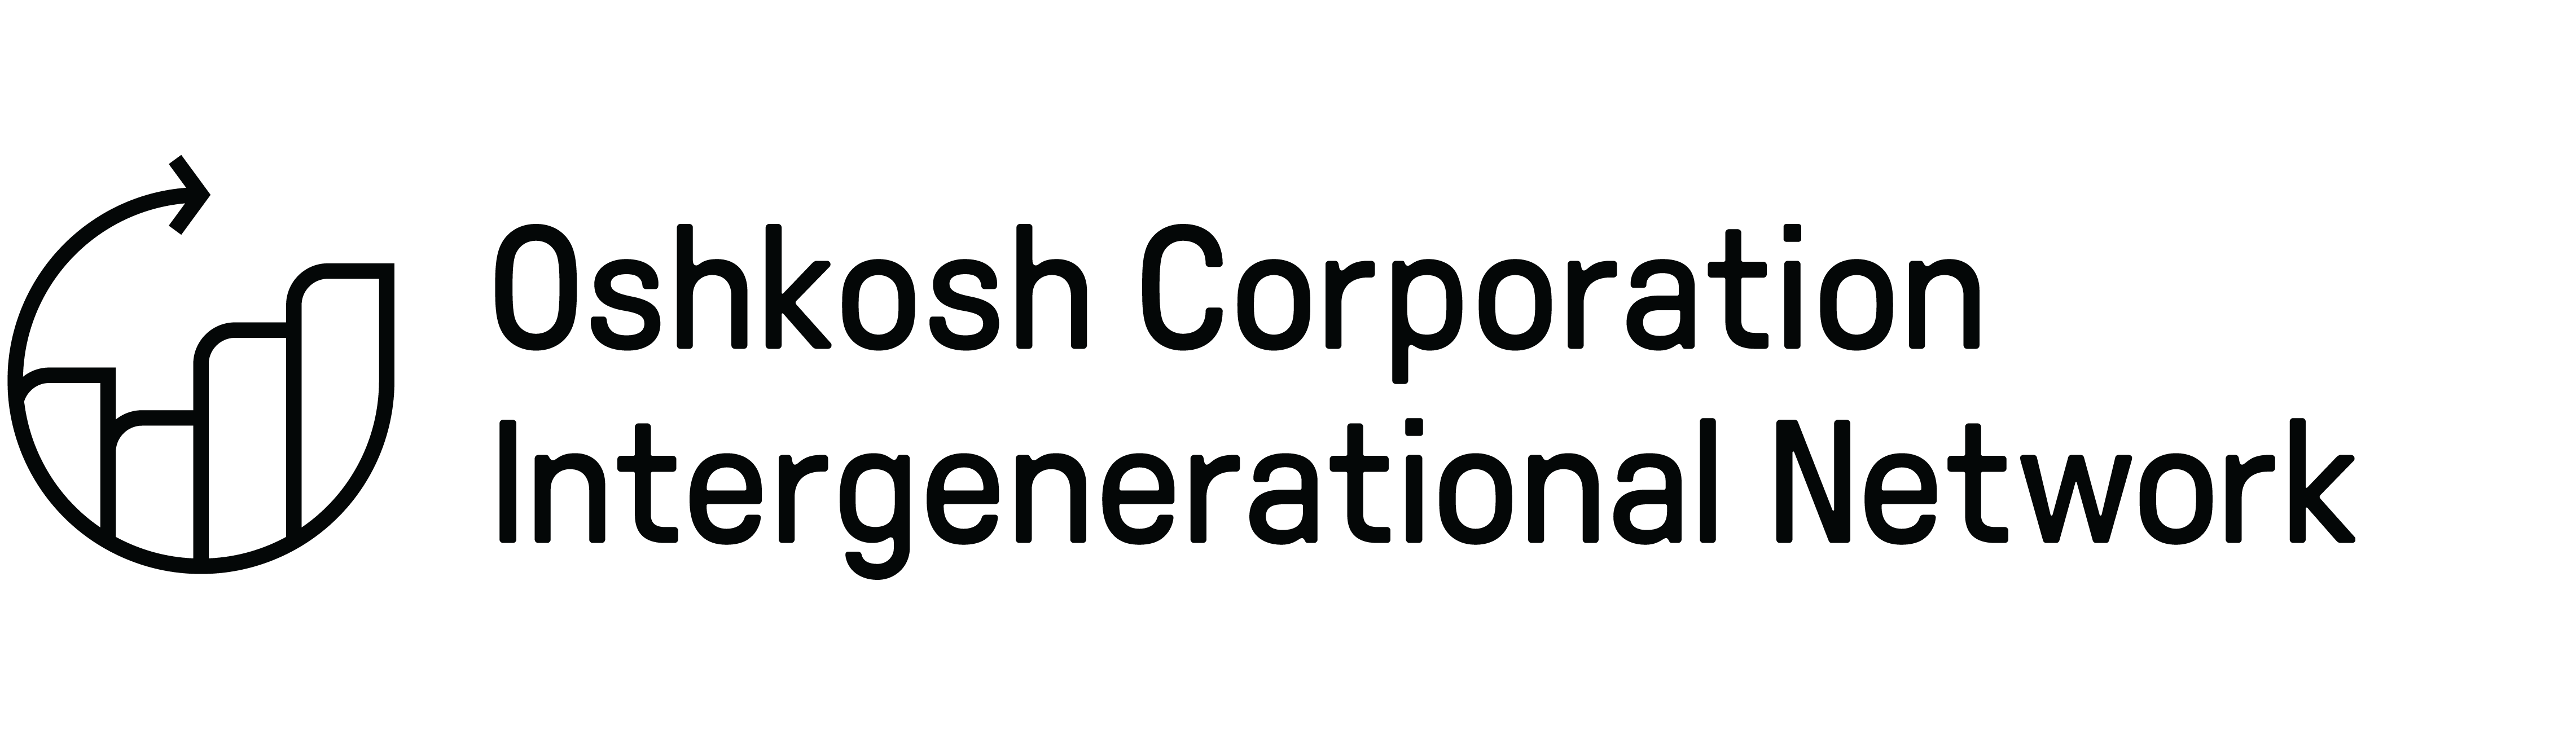 Black Oshkosh Corporation Intergenerational Network logo